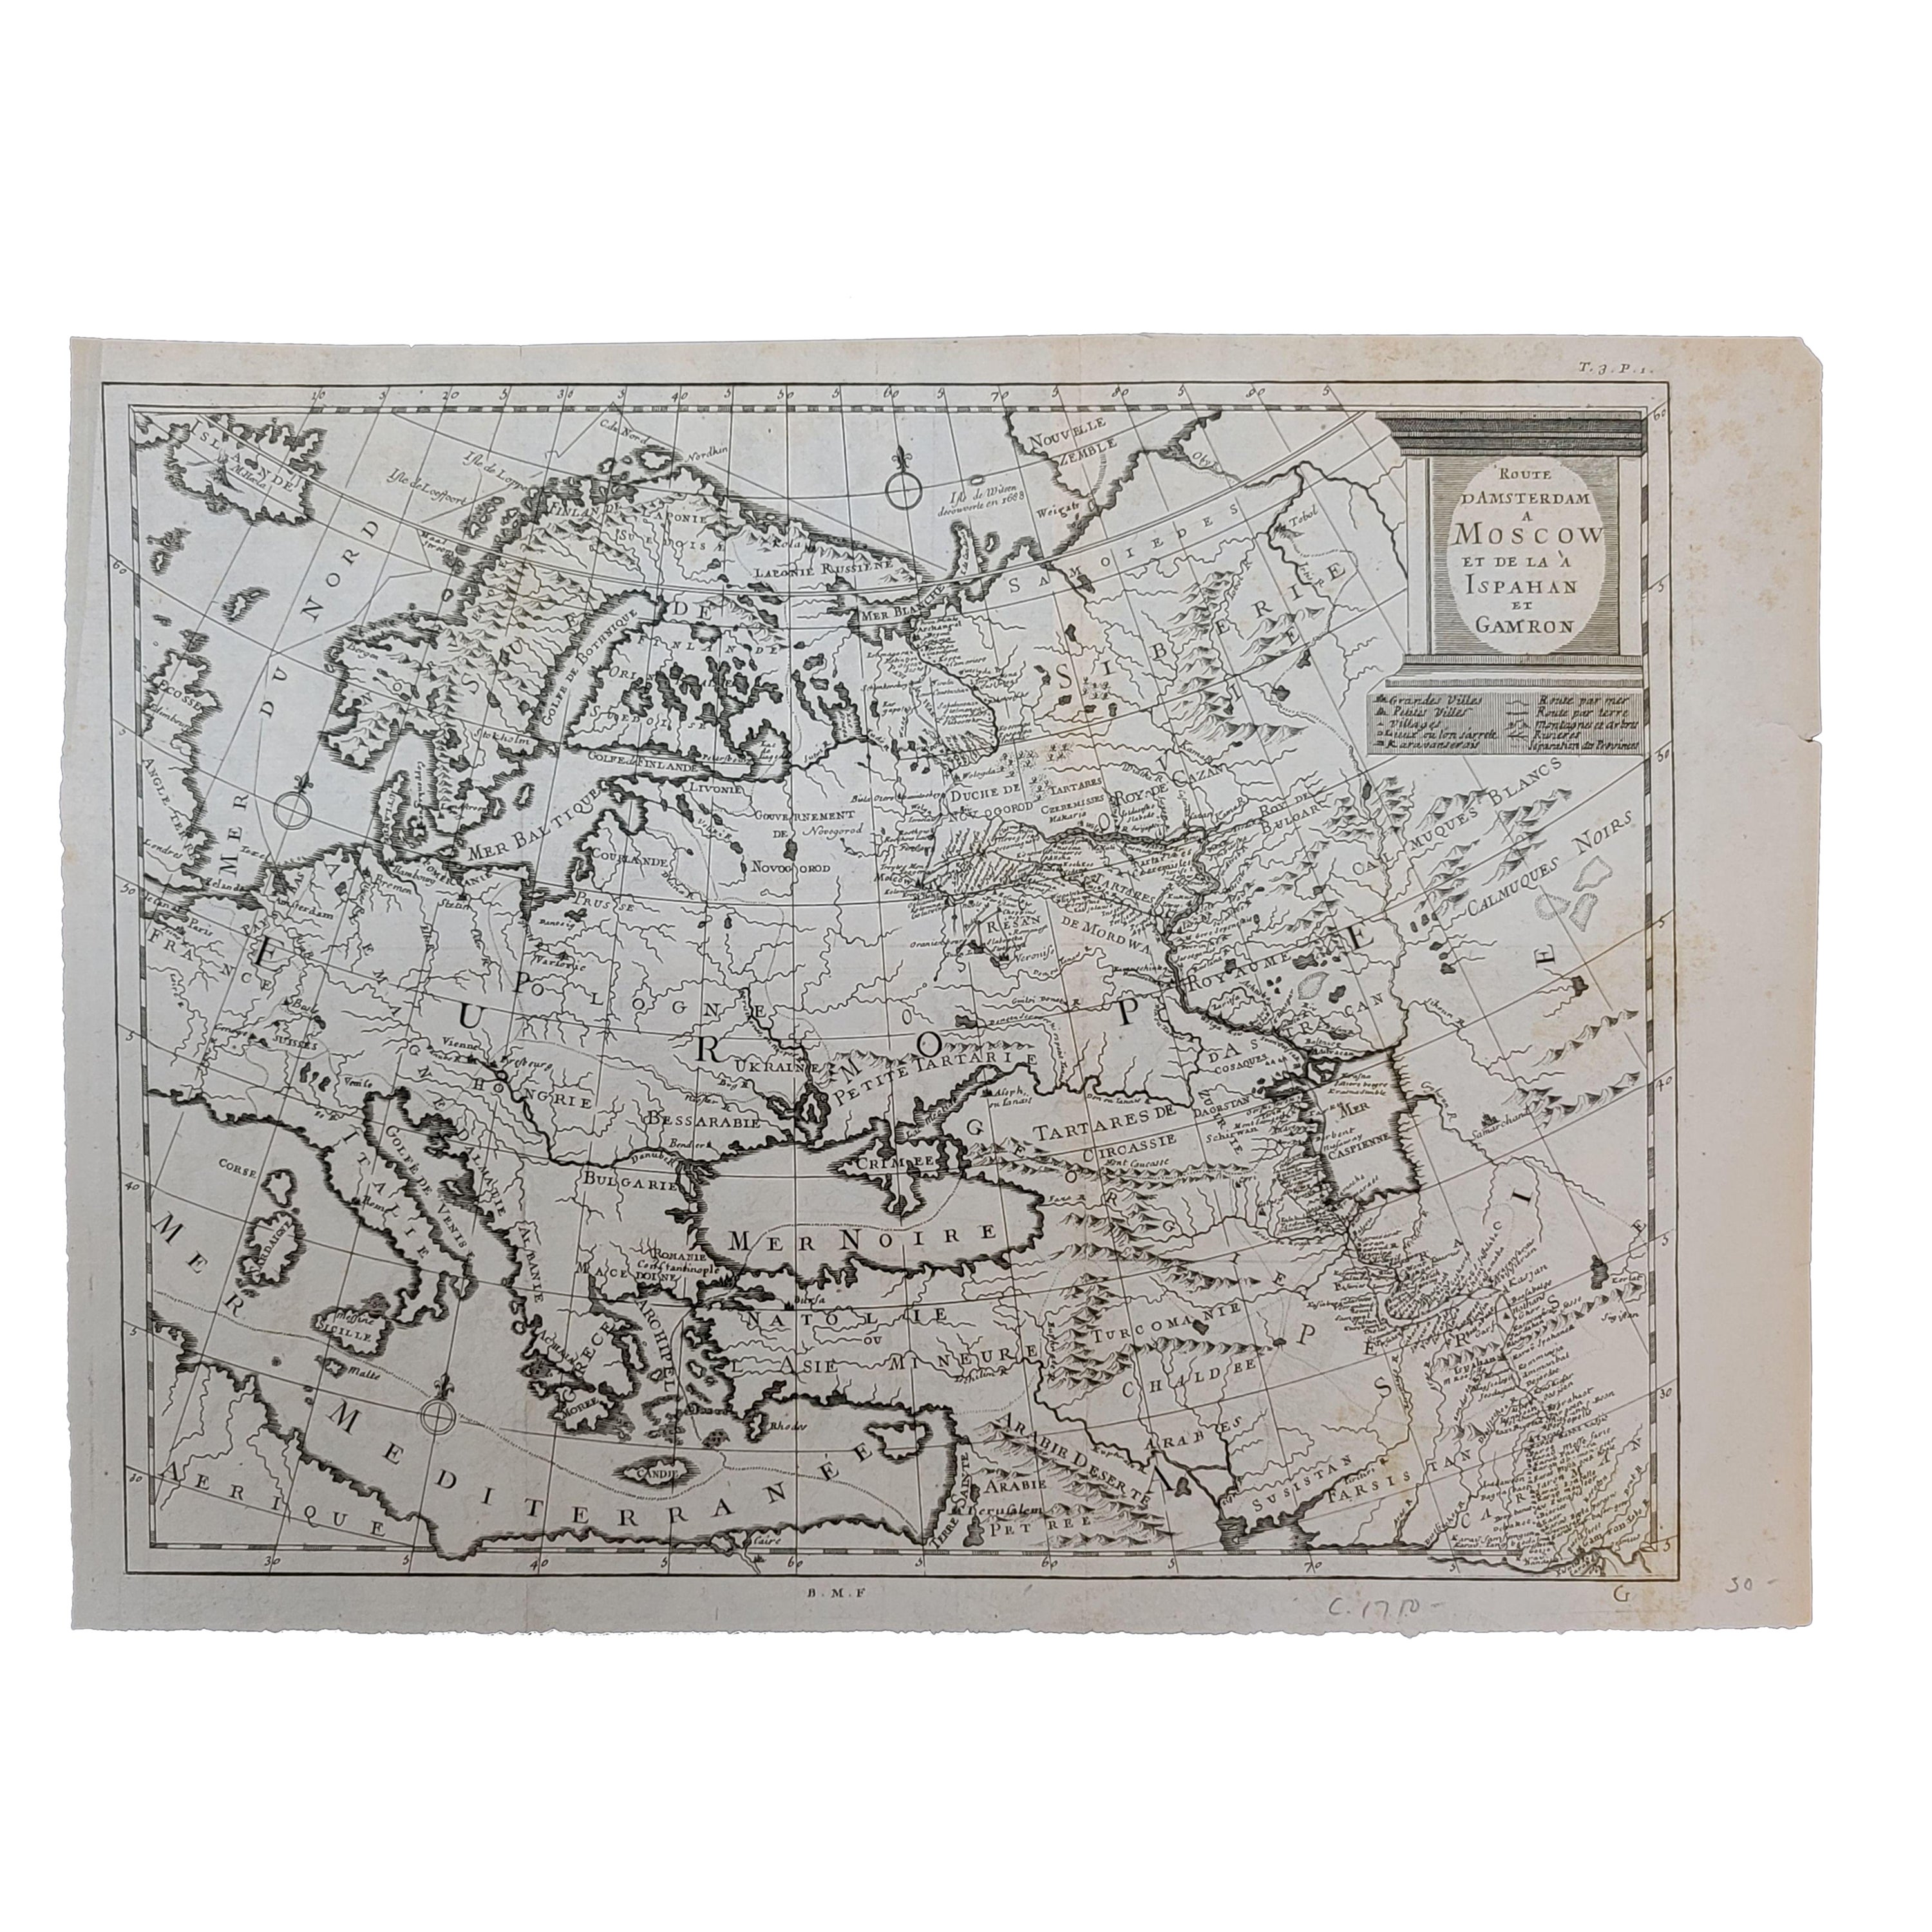 1718 Ides & Witsen Map "Route D'amsterdam a Moscow Et De La Ispahan Et Gamron For Sale